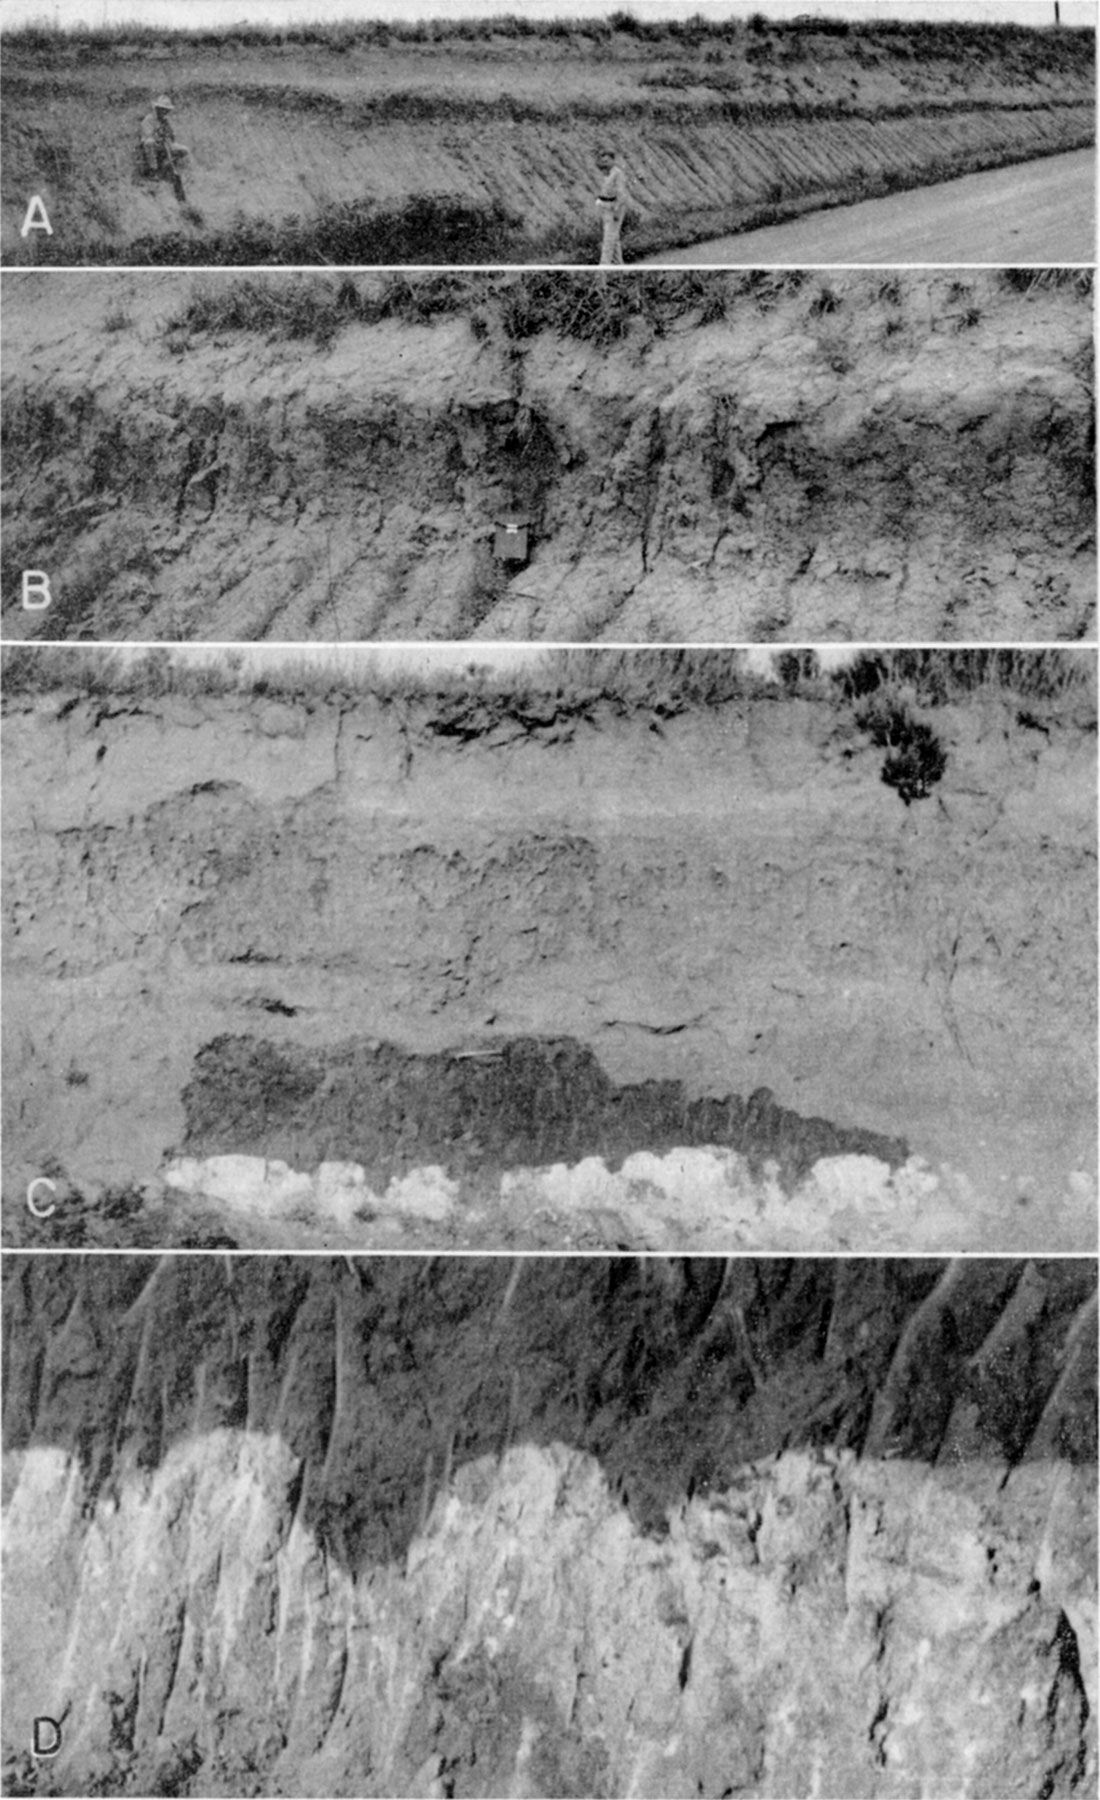 four black and white photos of Brady soil in western Kansas.